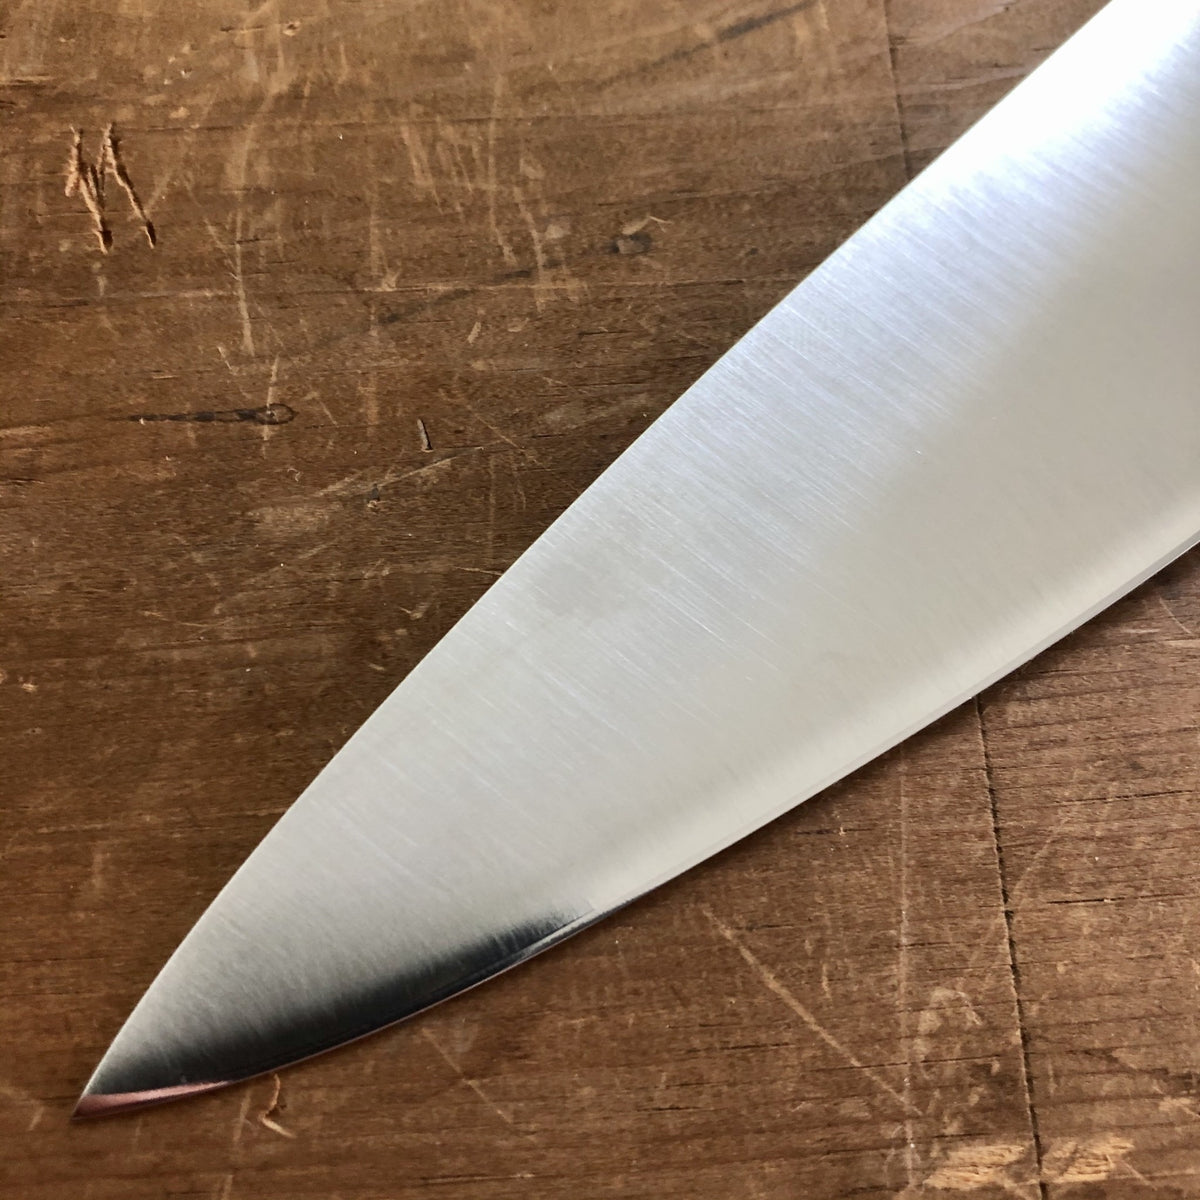 8 Inch Chef Knife (K-Sabatier 1834) - Best for All Food Prep